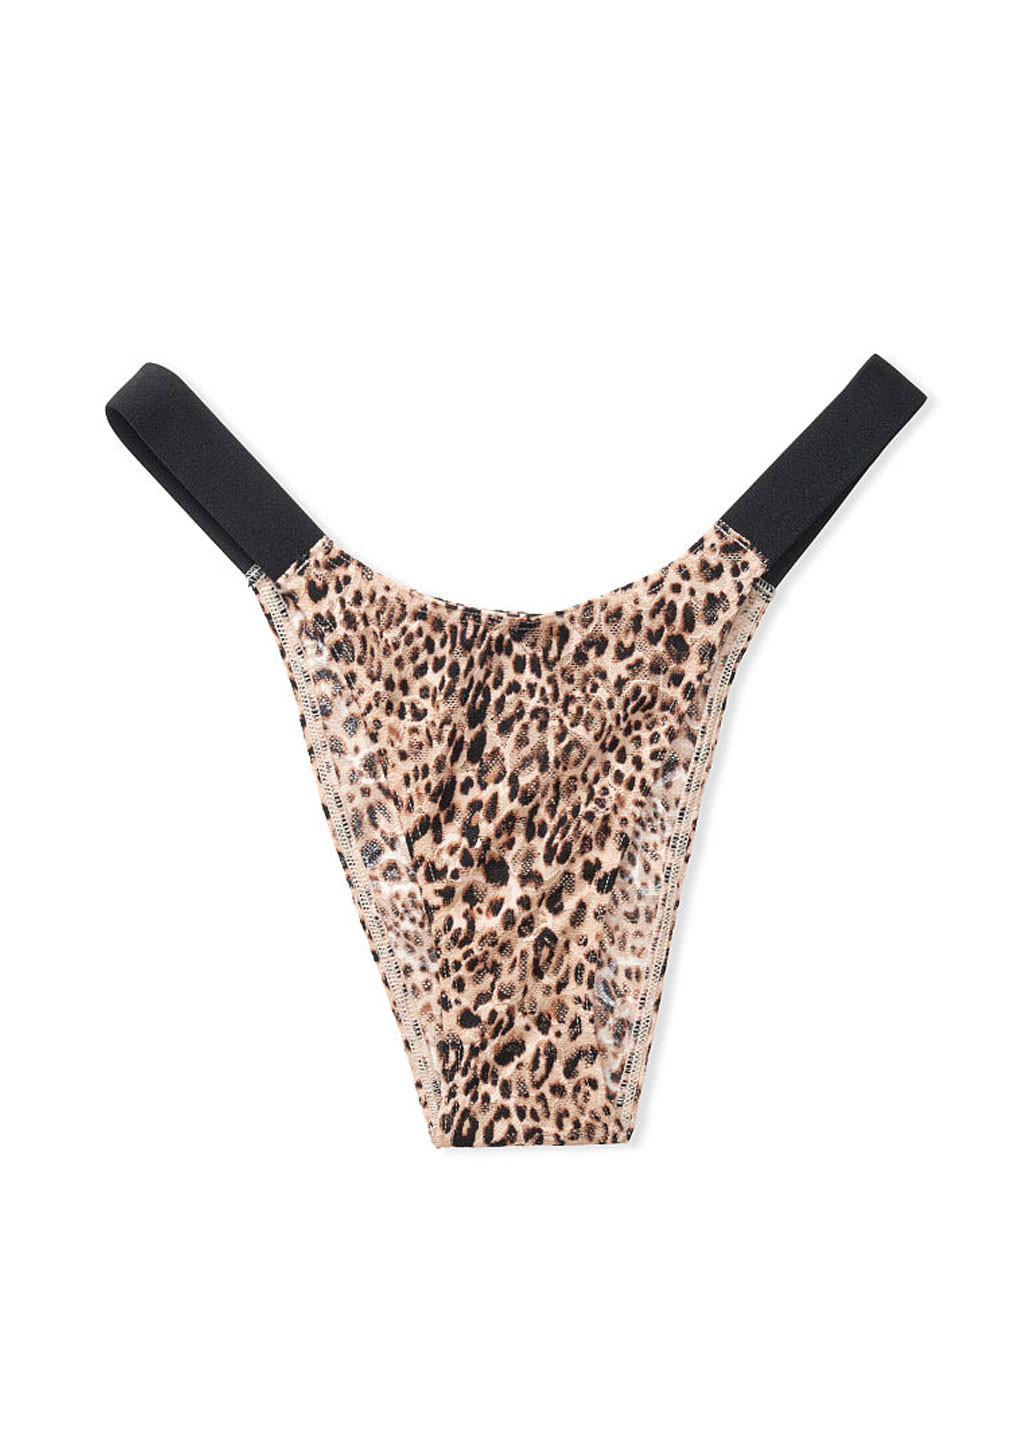 Трусы Victoria's Secret бикини леопардовые бежевые повседневные трикотаж, полиамид